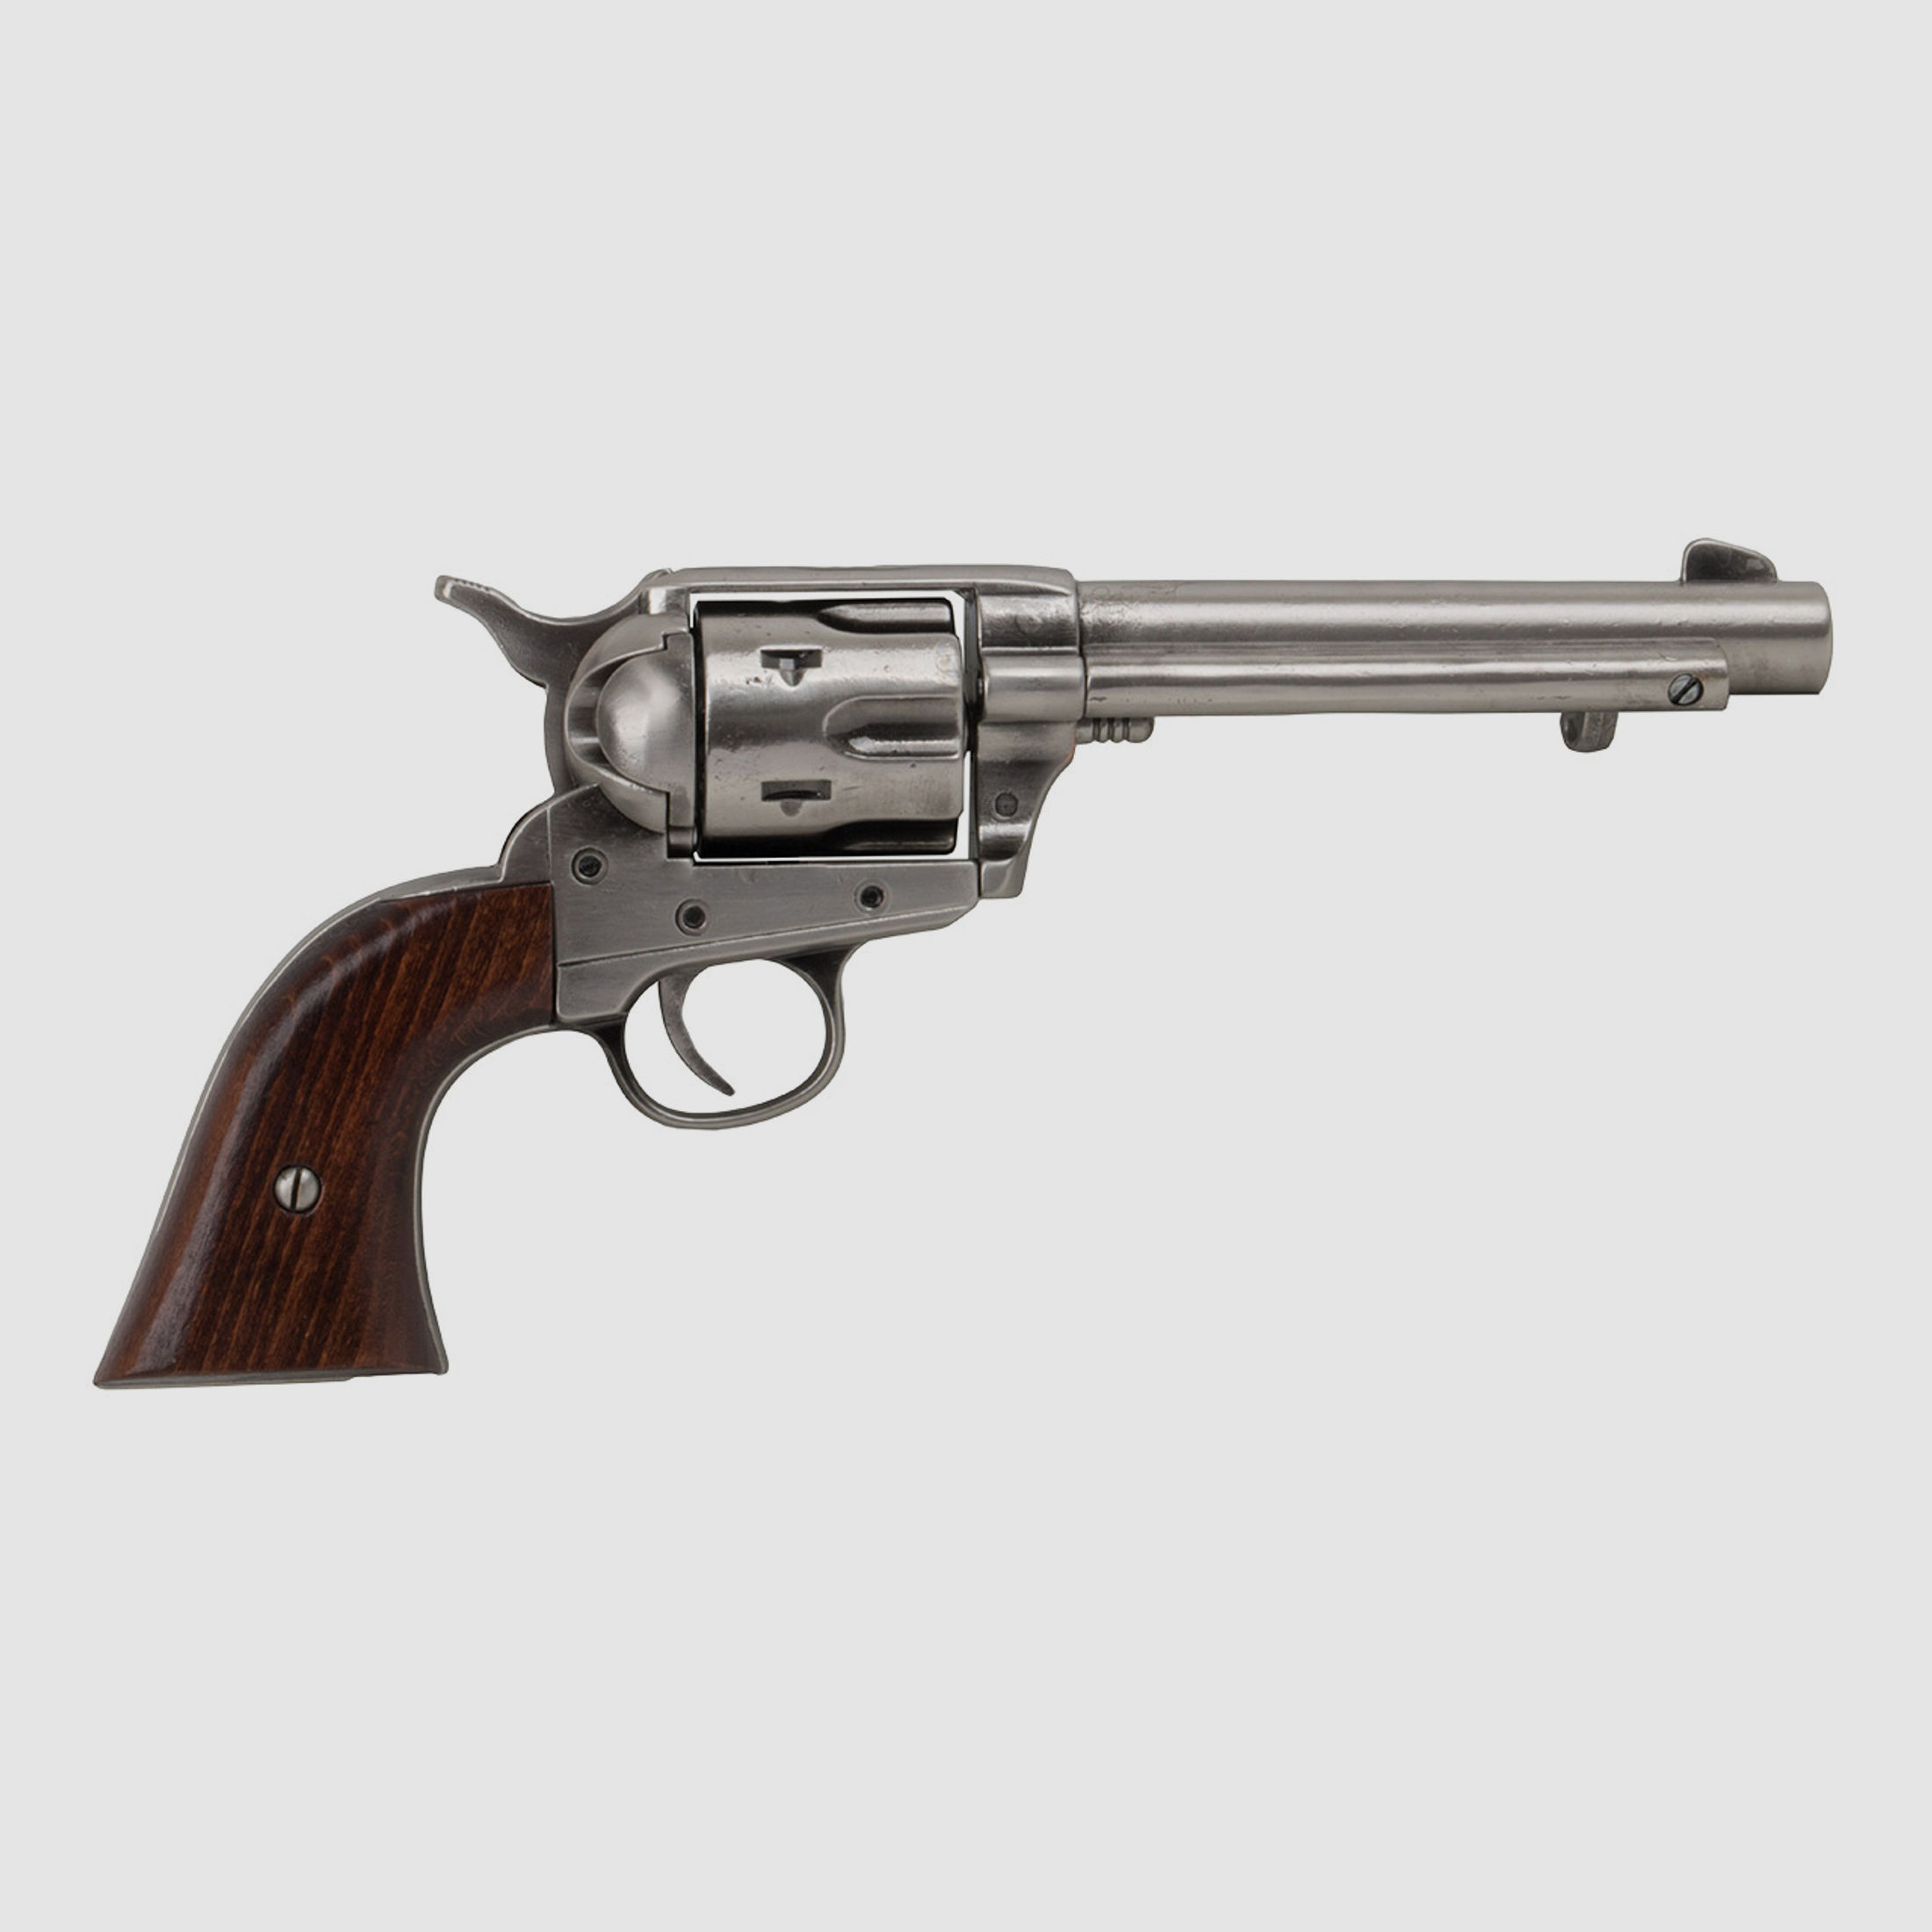 Deko Revolver Kolser Colt SAA .45 Peacemaker USA 1873 5,5 Zoll nickel poliert Holzgriffschalen